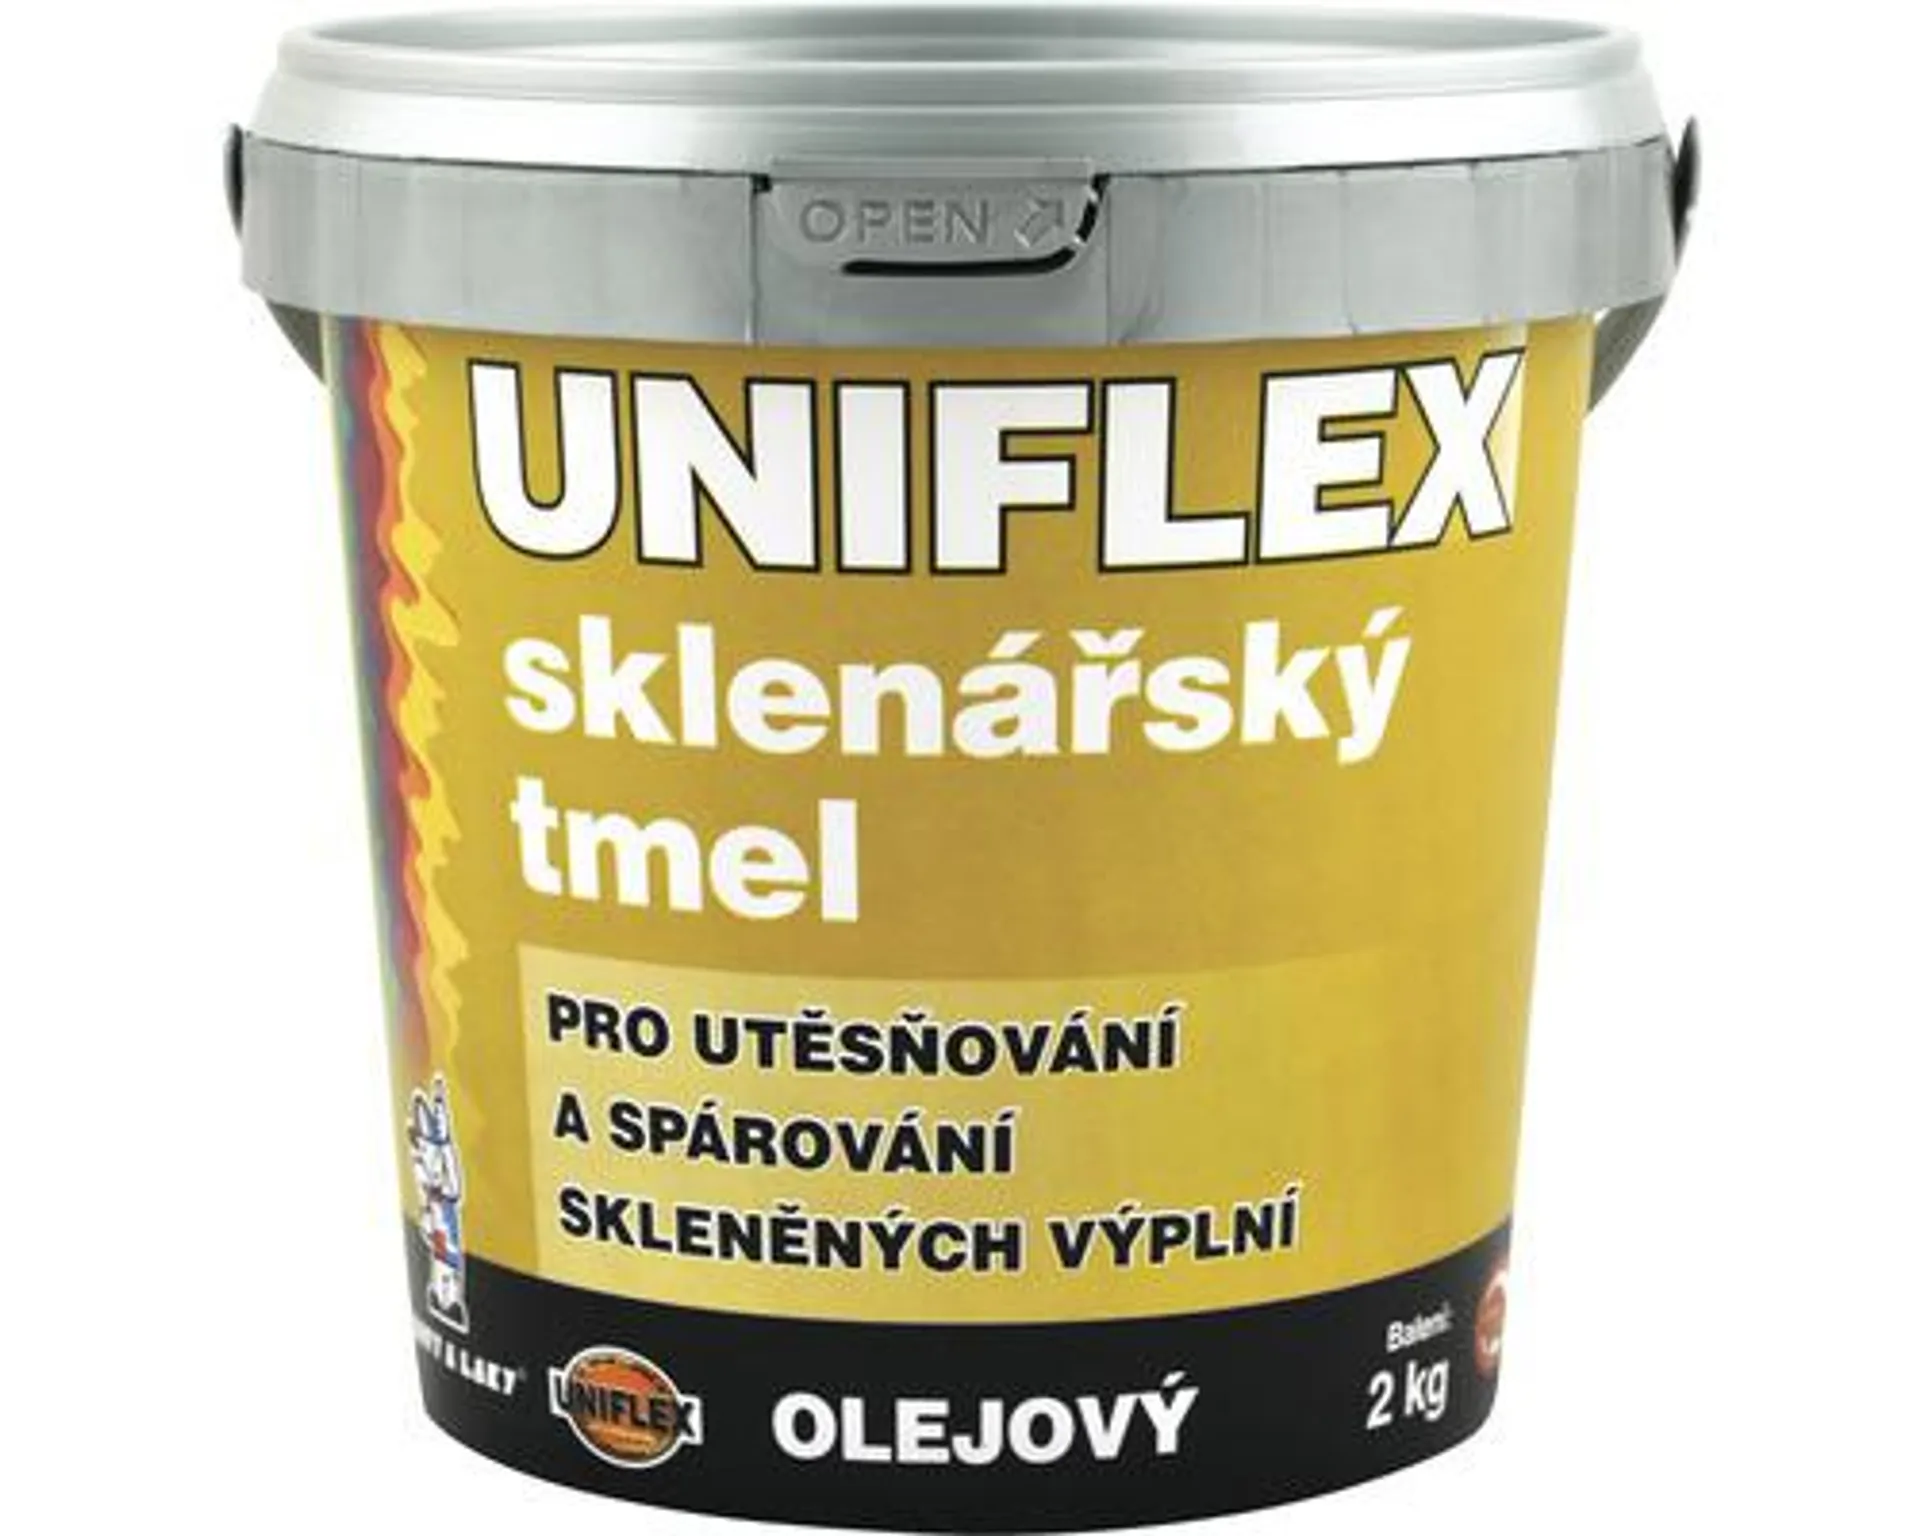 Sklenársky tmel Uniflex 2 kg